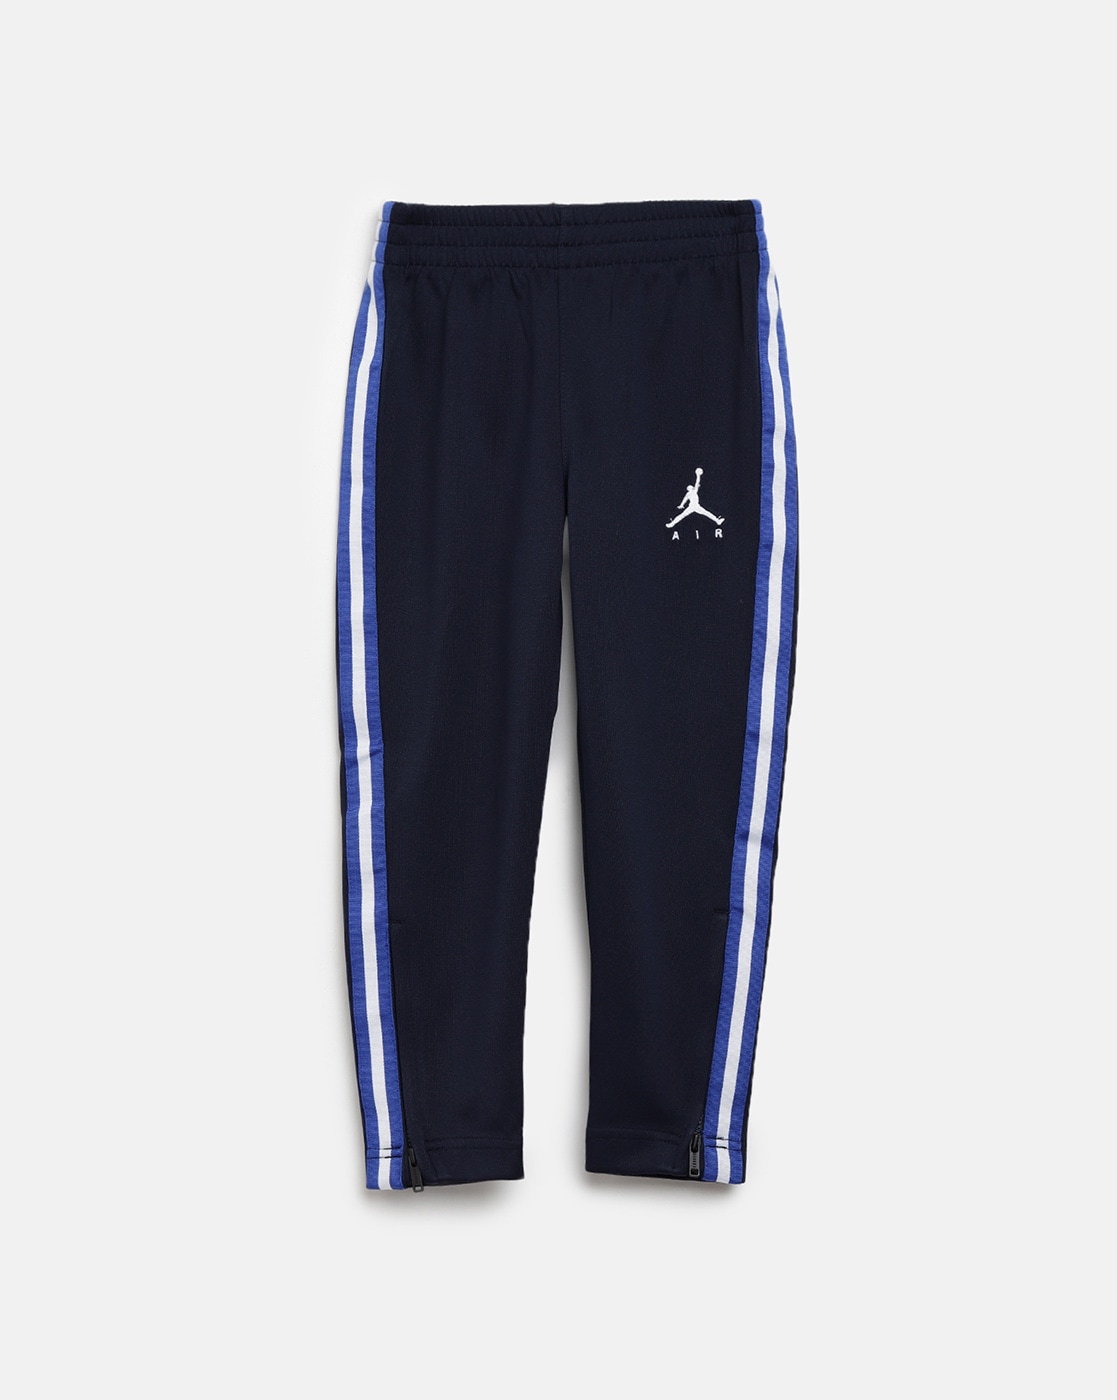 Jordan Nike Air Flight fleece sweatpants in blue - ShopStyle Plus Size Pants